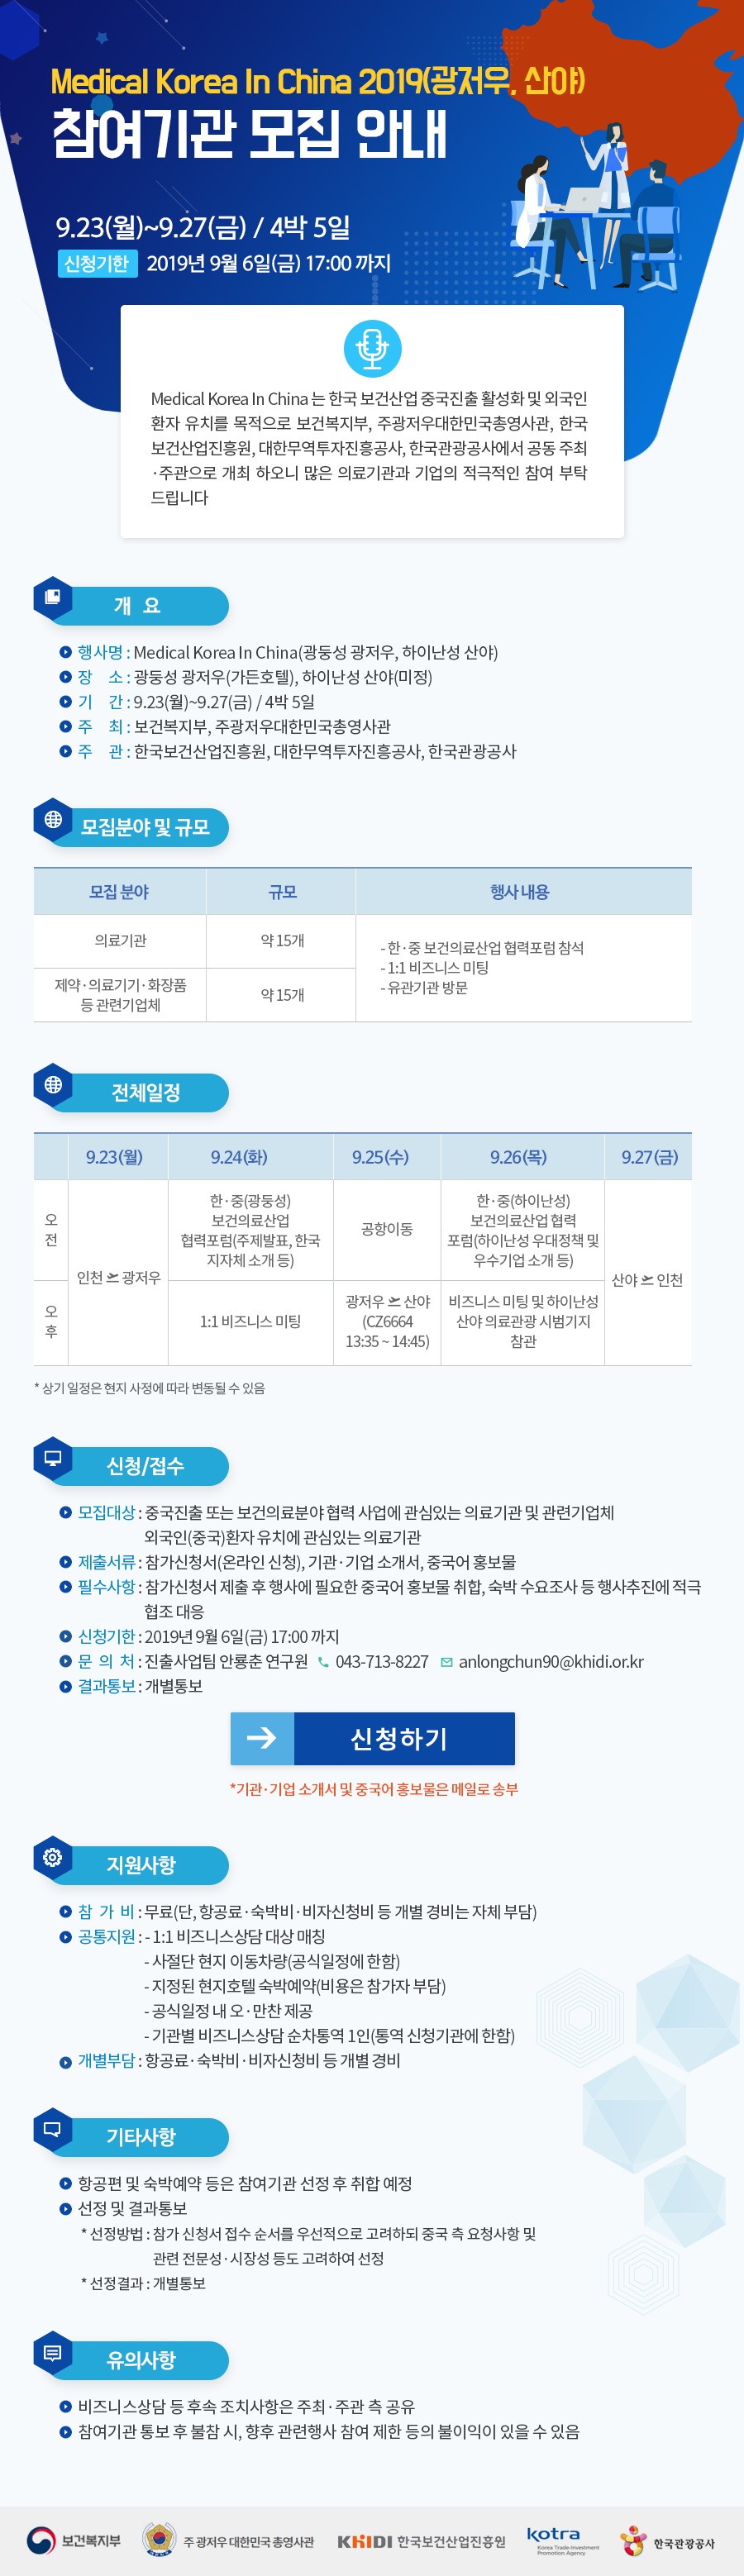 Medical Korea In China(광저우, 산야) 기업 추가모집 안내 - 자세한 내용은 첨부된 파일을 다운받아 확인해 주세요.